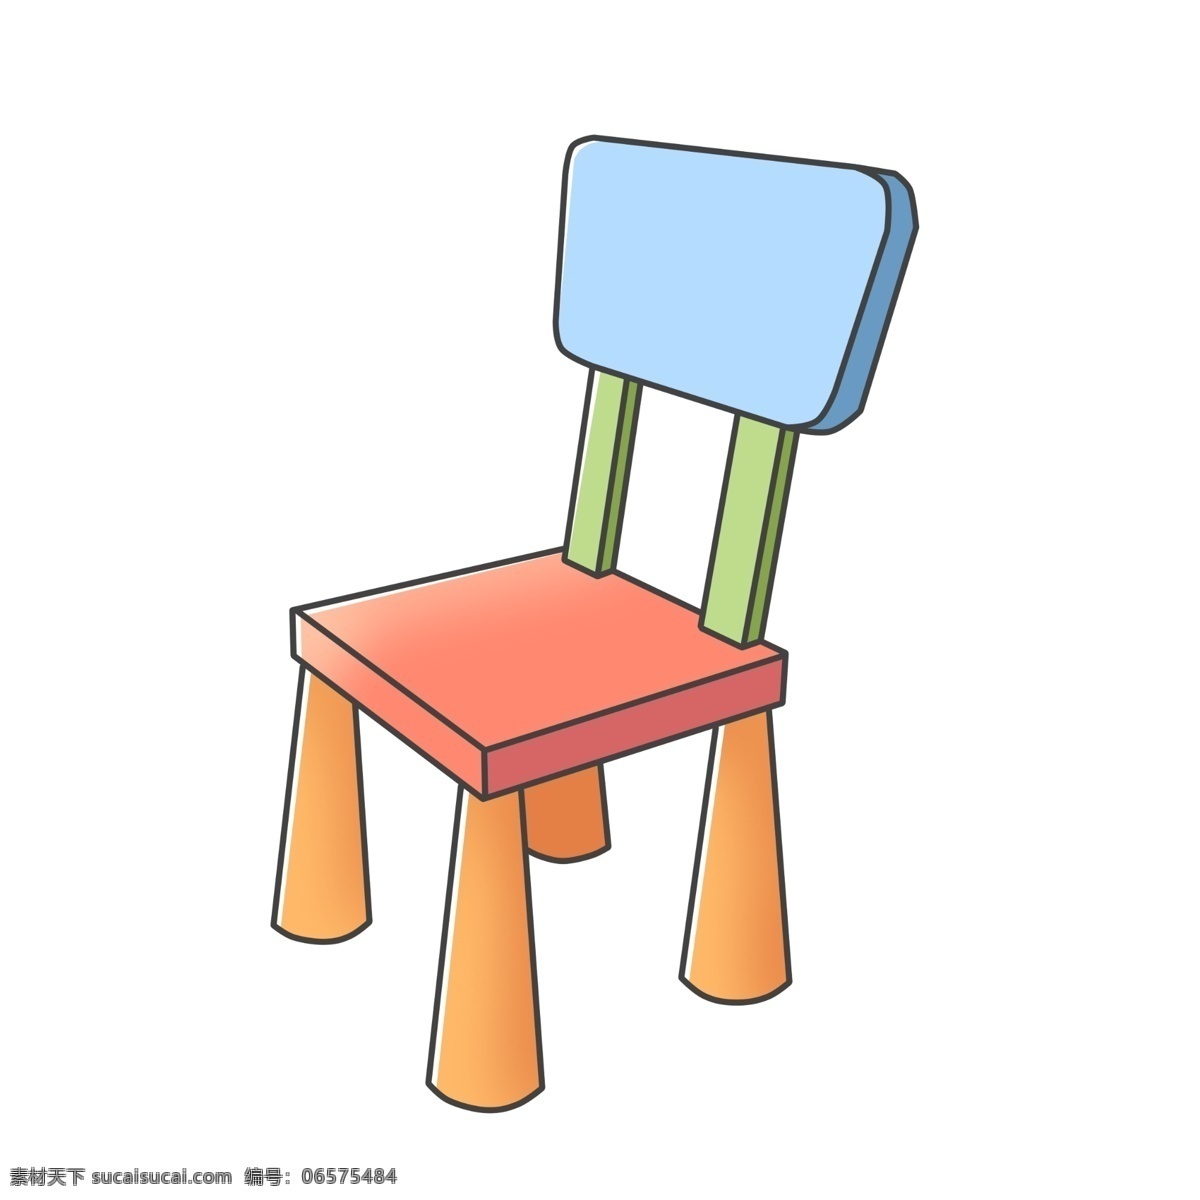 彩色 椅子 装饰 插画 彩色的椅子 漂亮的椅子 儿童椅子 木头椅子 创意椅子 立体椅子 精美椅子